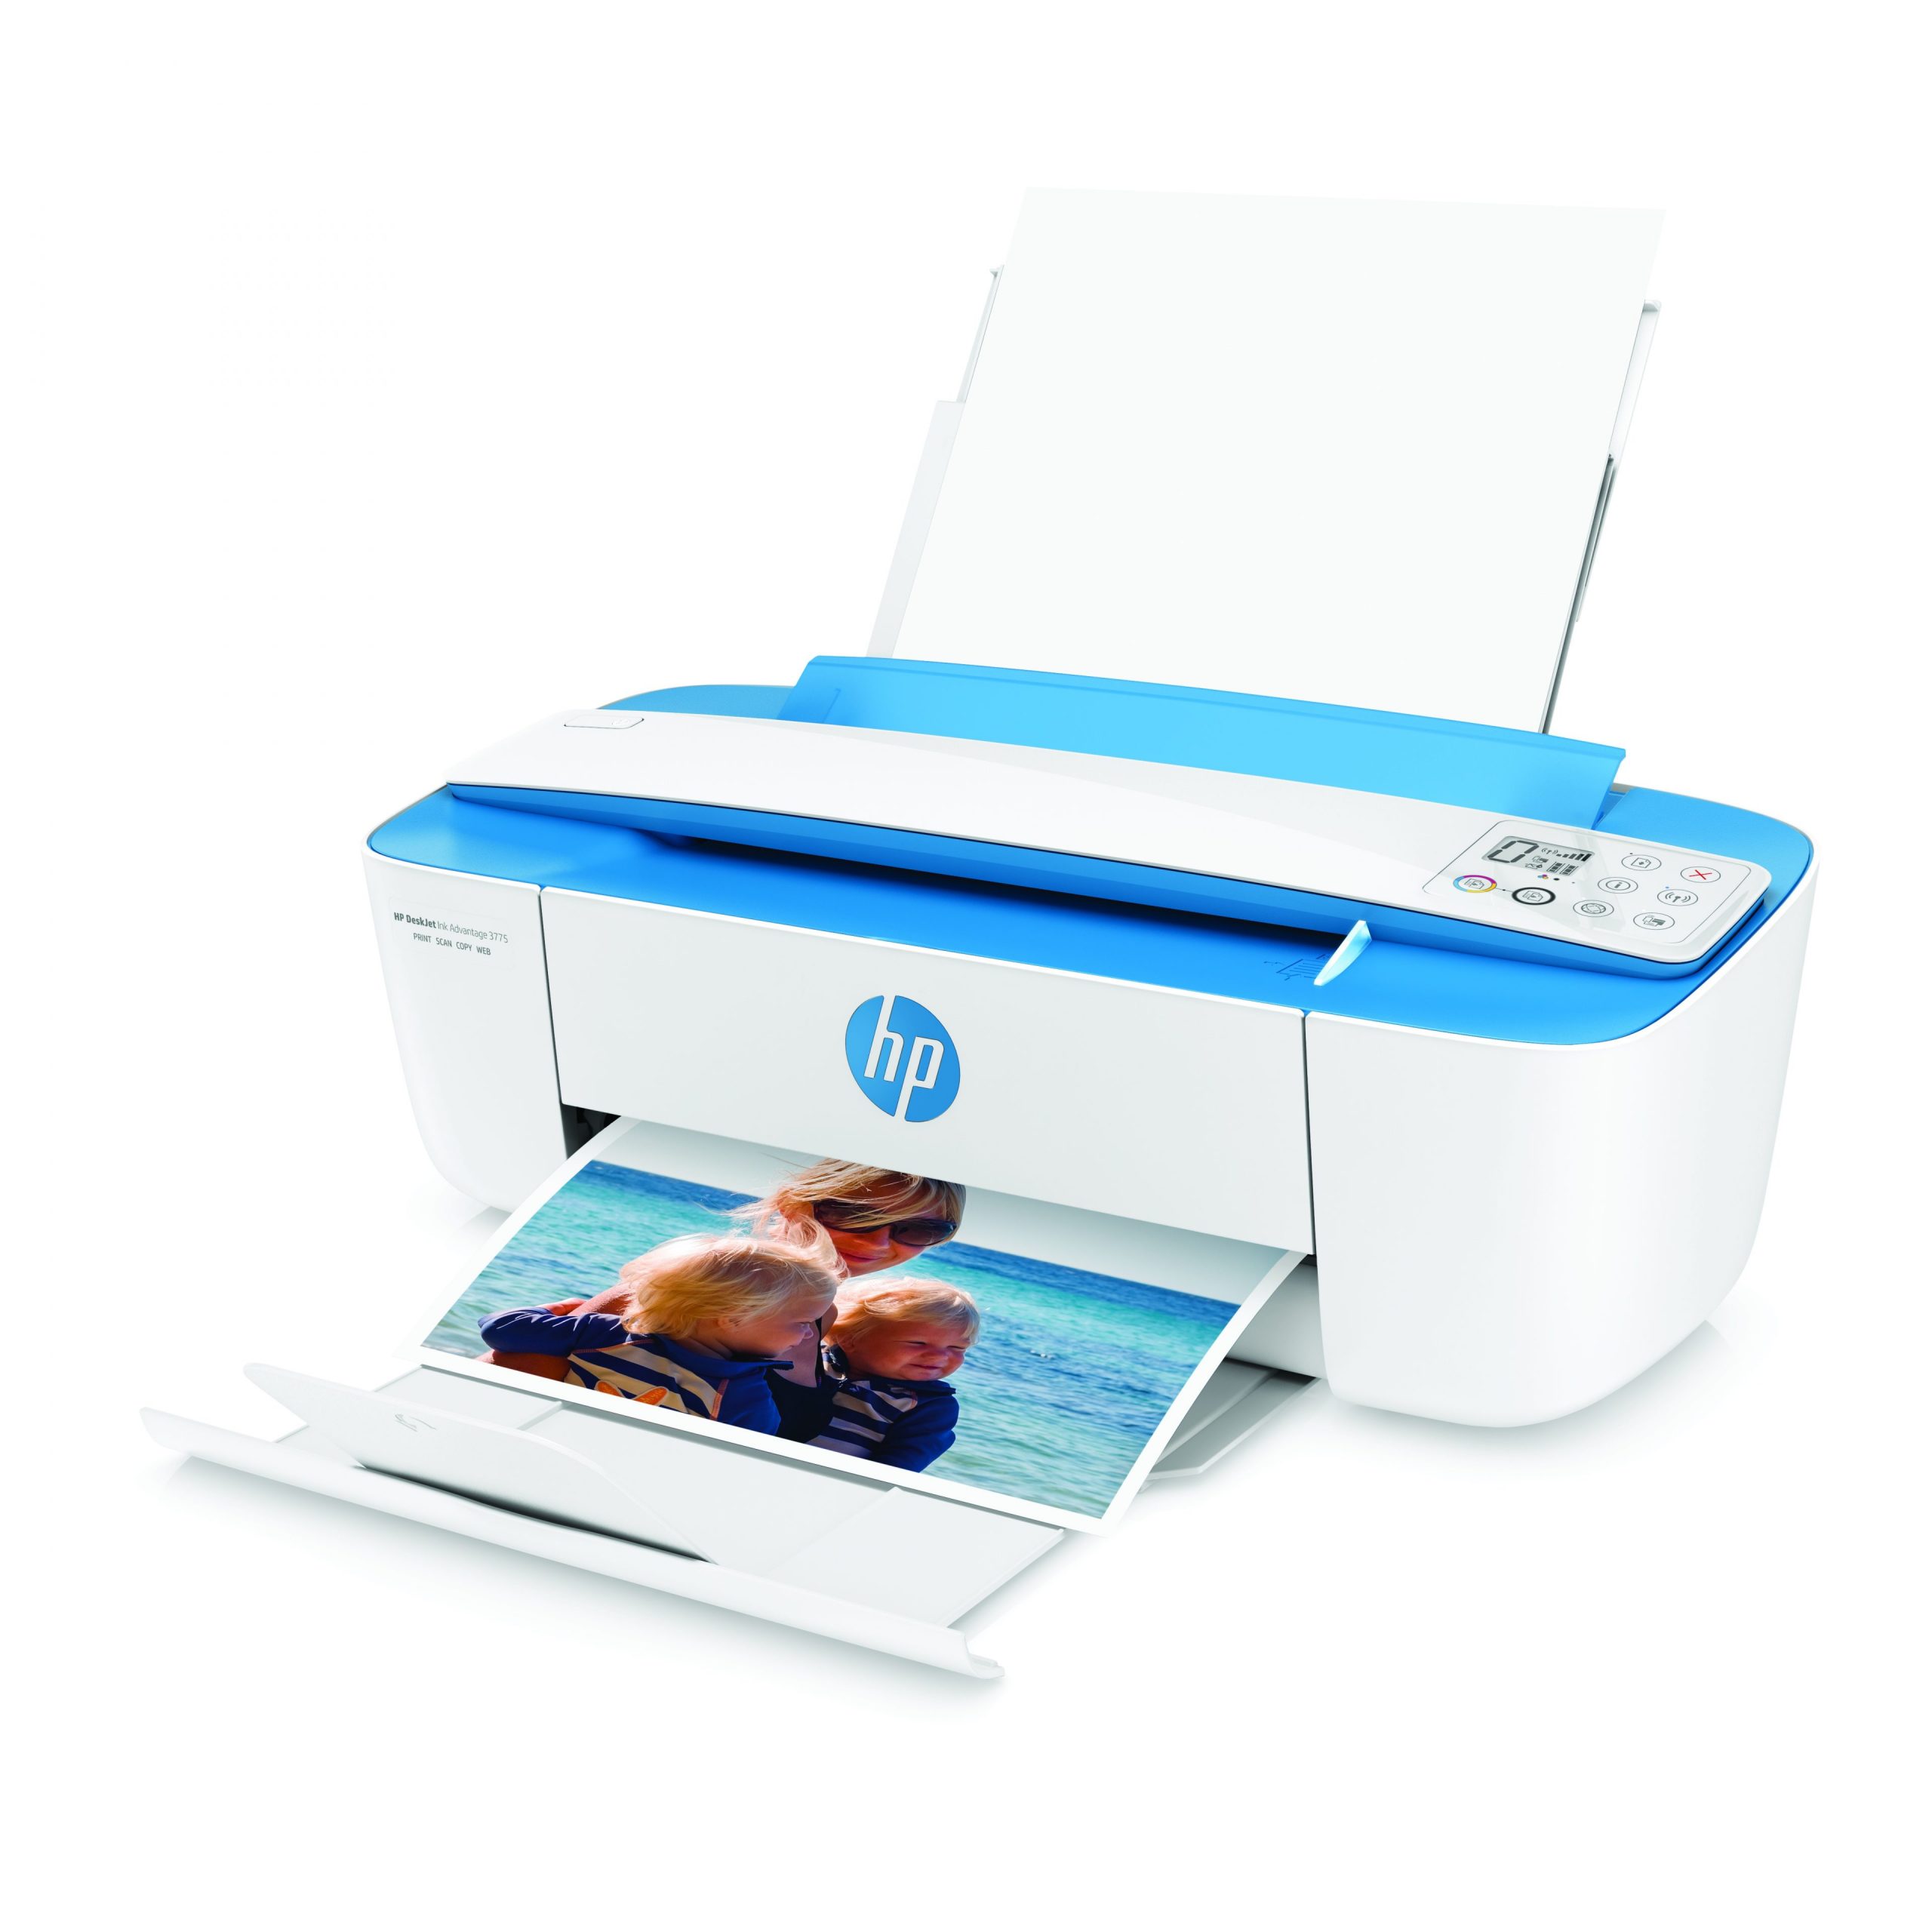 HP tái kiến tạo máy in tiêu dùng gia đình với Ultra compact All-in-One